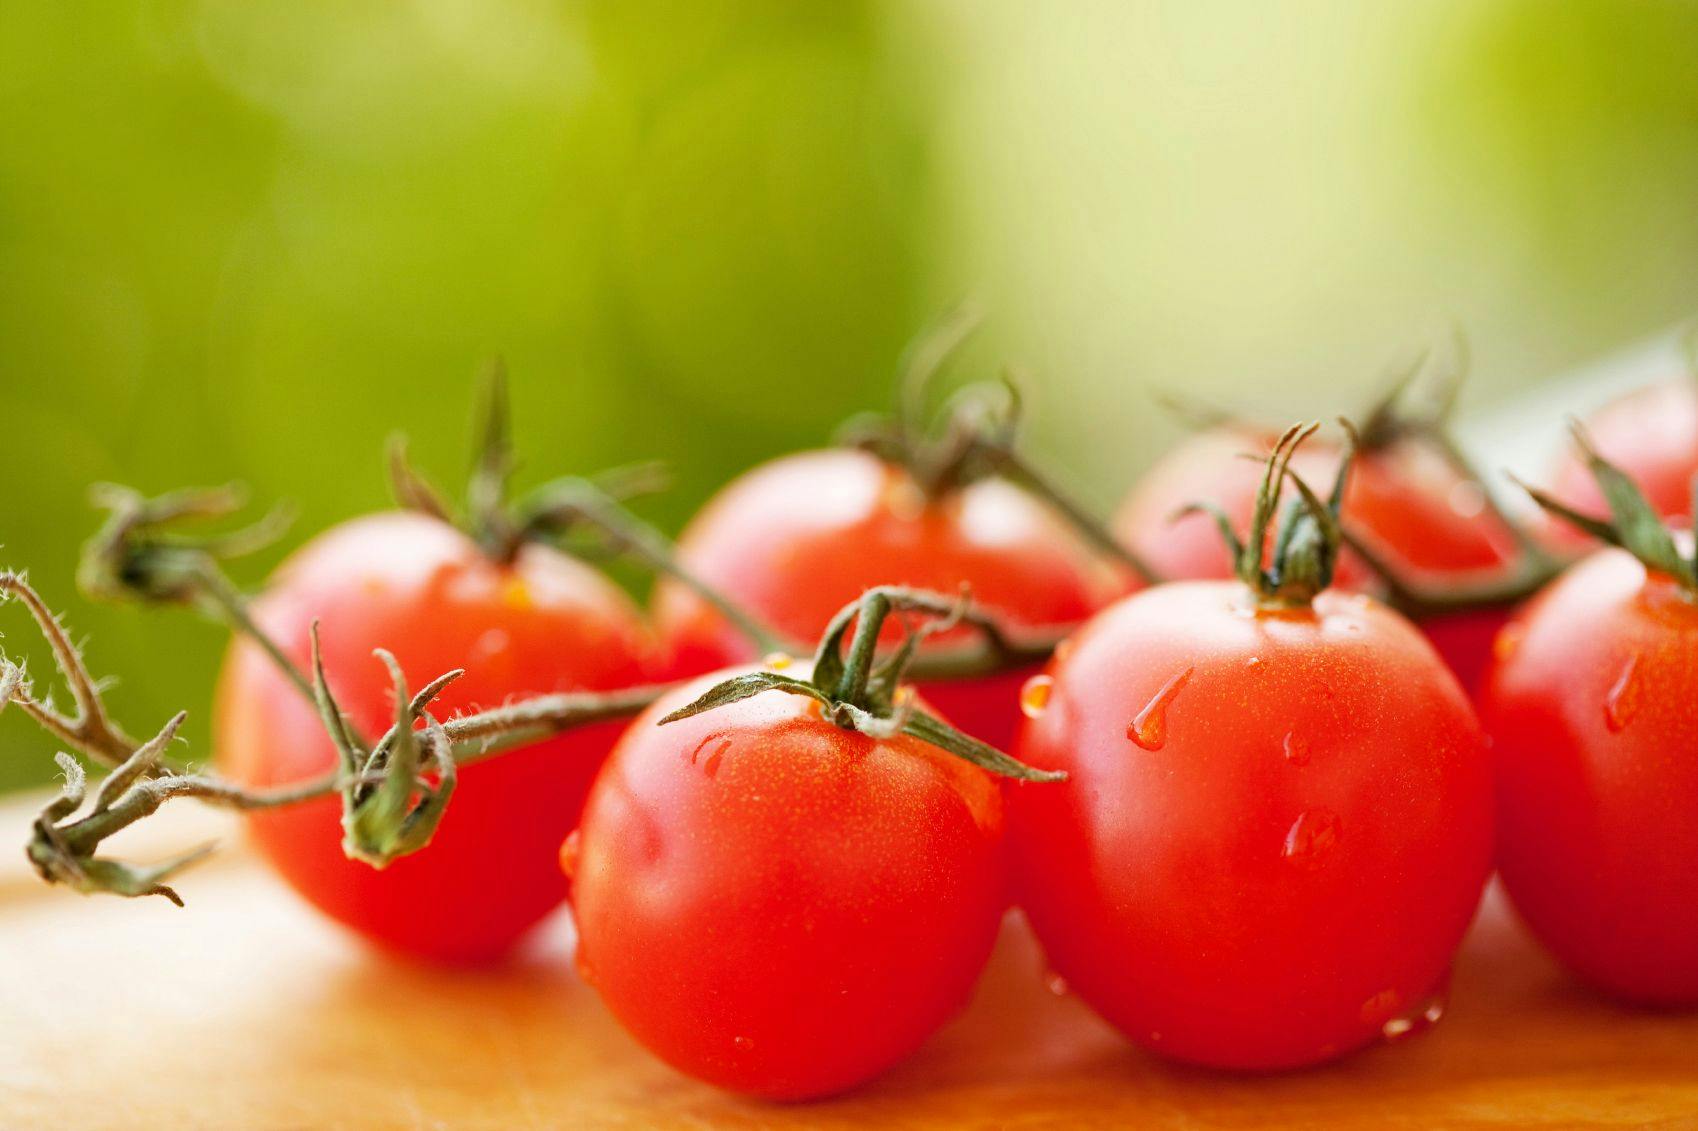 Fun Fact: Tomato